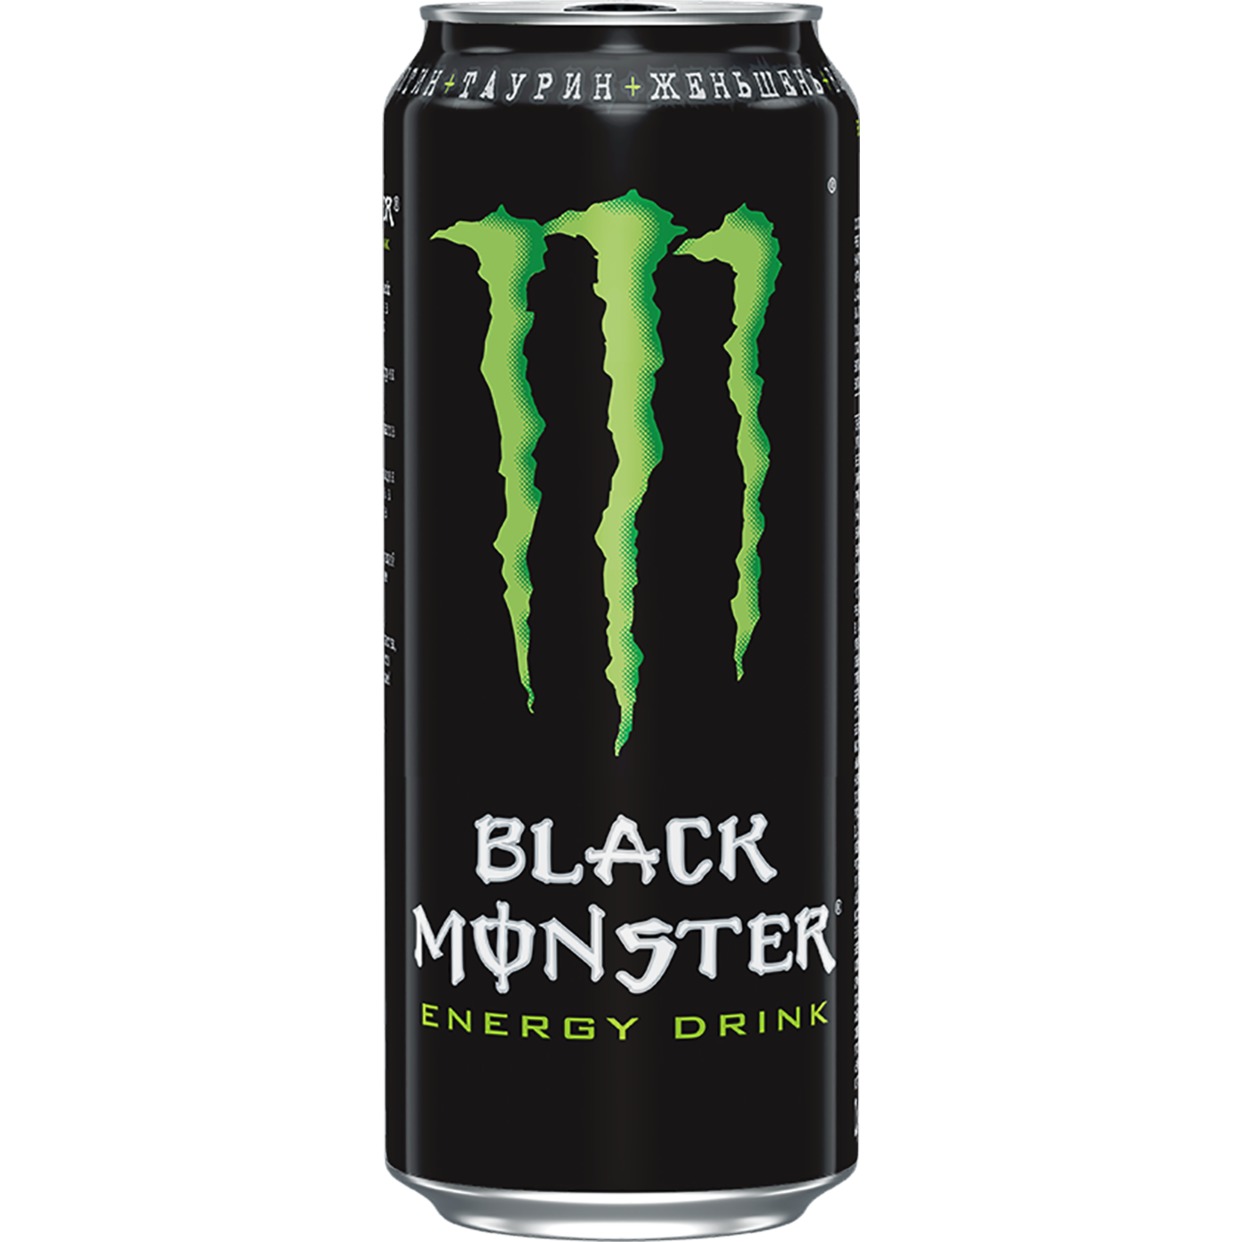 Black Monster - БЛЭК МОНСТР напиток безалкогольный тонизирующий (энергетический) газированный 0.449л по акции в Пятерочке